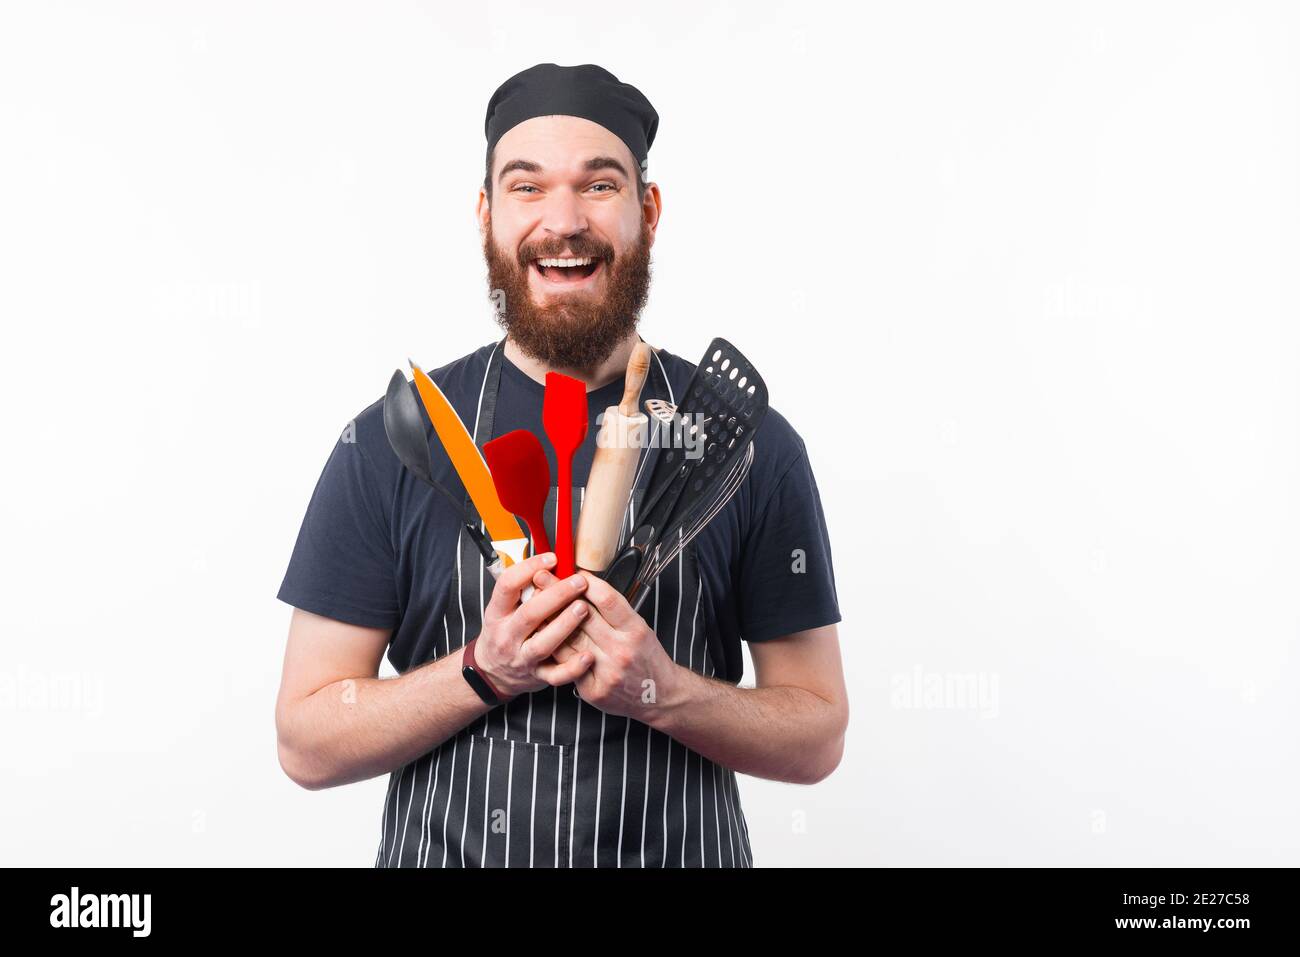 Foto di un uomo Chef con bearded stupito che tiene in mano gli utensili. Foto Stock